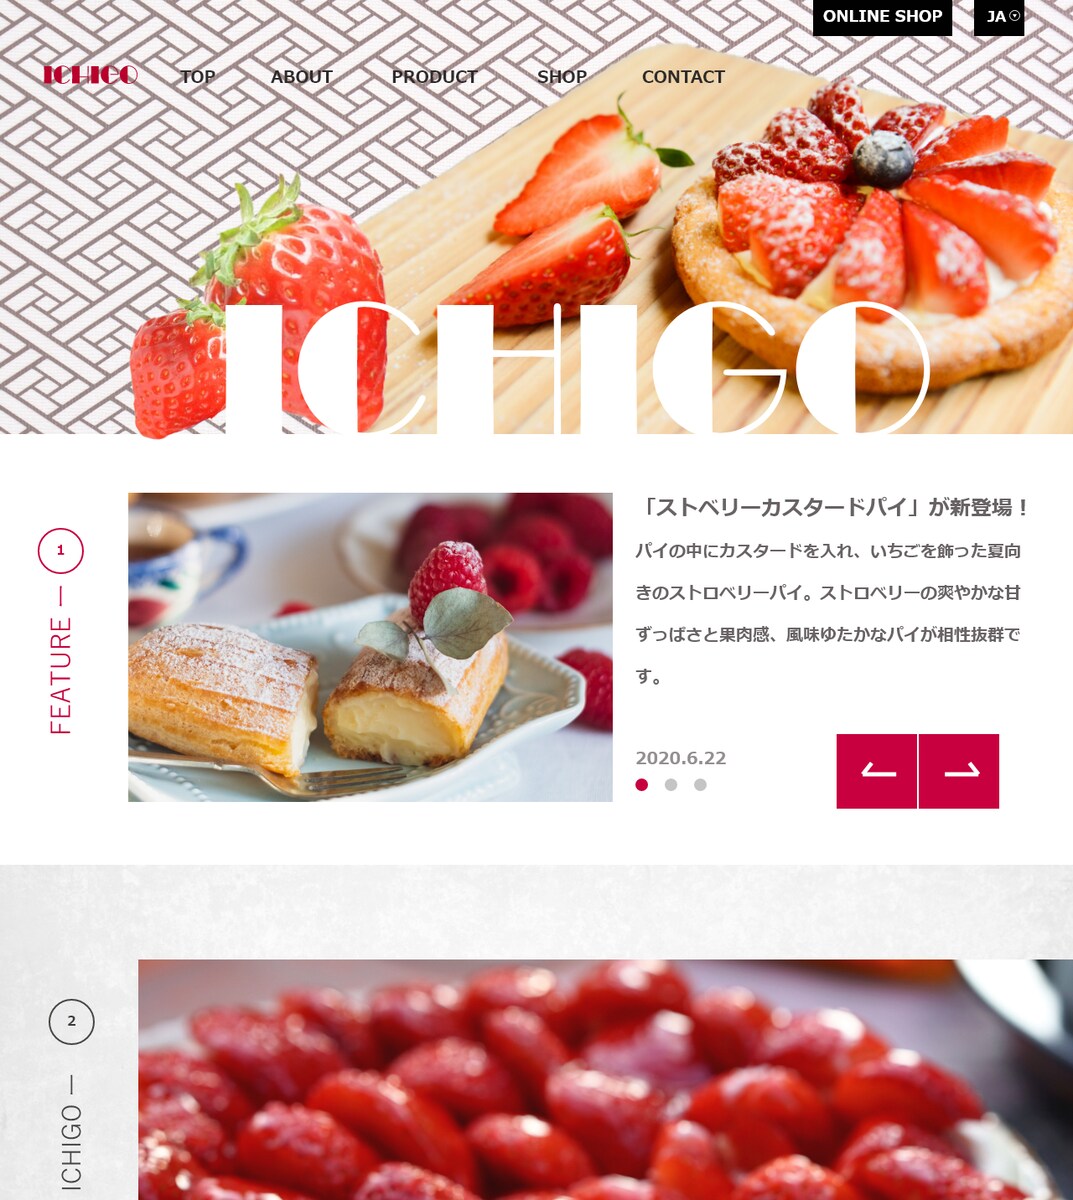 イチゴ専門店様のホームページ制作